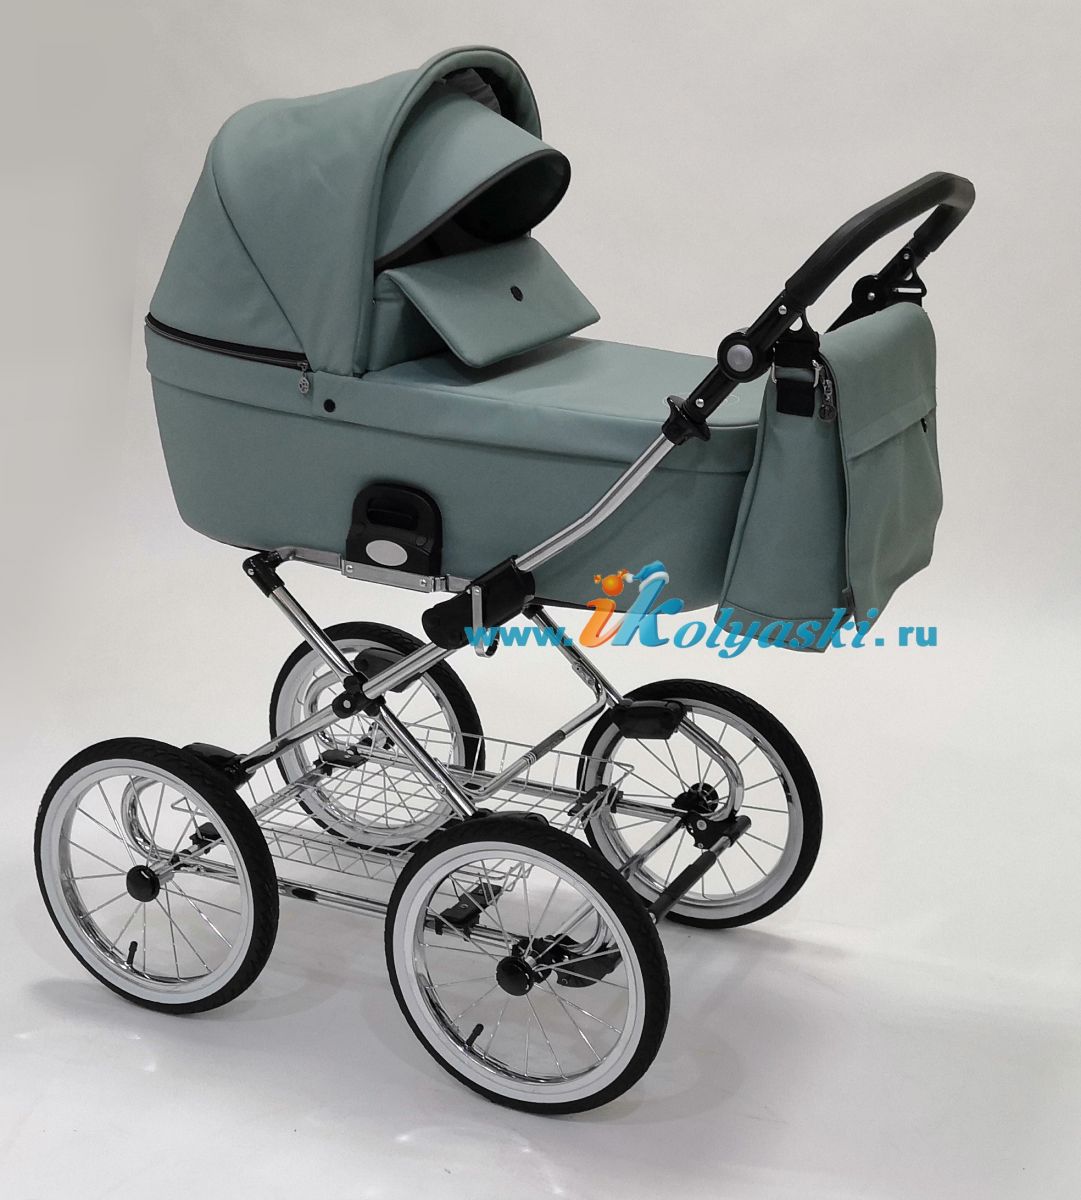 Roan Coss Classic коляска для новорожденных 3 в 1 на больших колесах новые цвета 2020 - купить в интернет-магазине Иколяски в Москве с доставкой по РФ - цвет Misty Mint